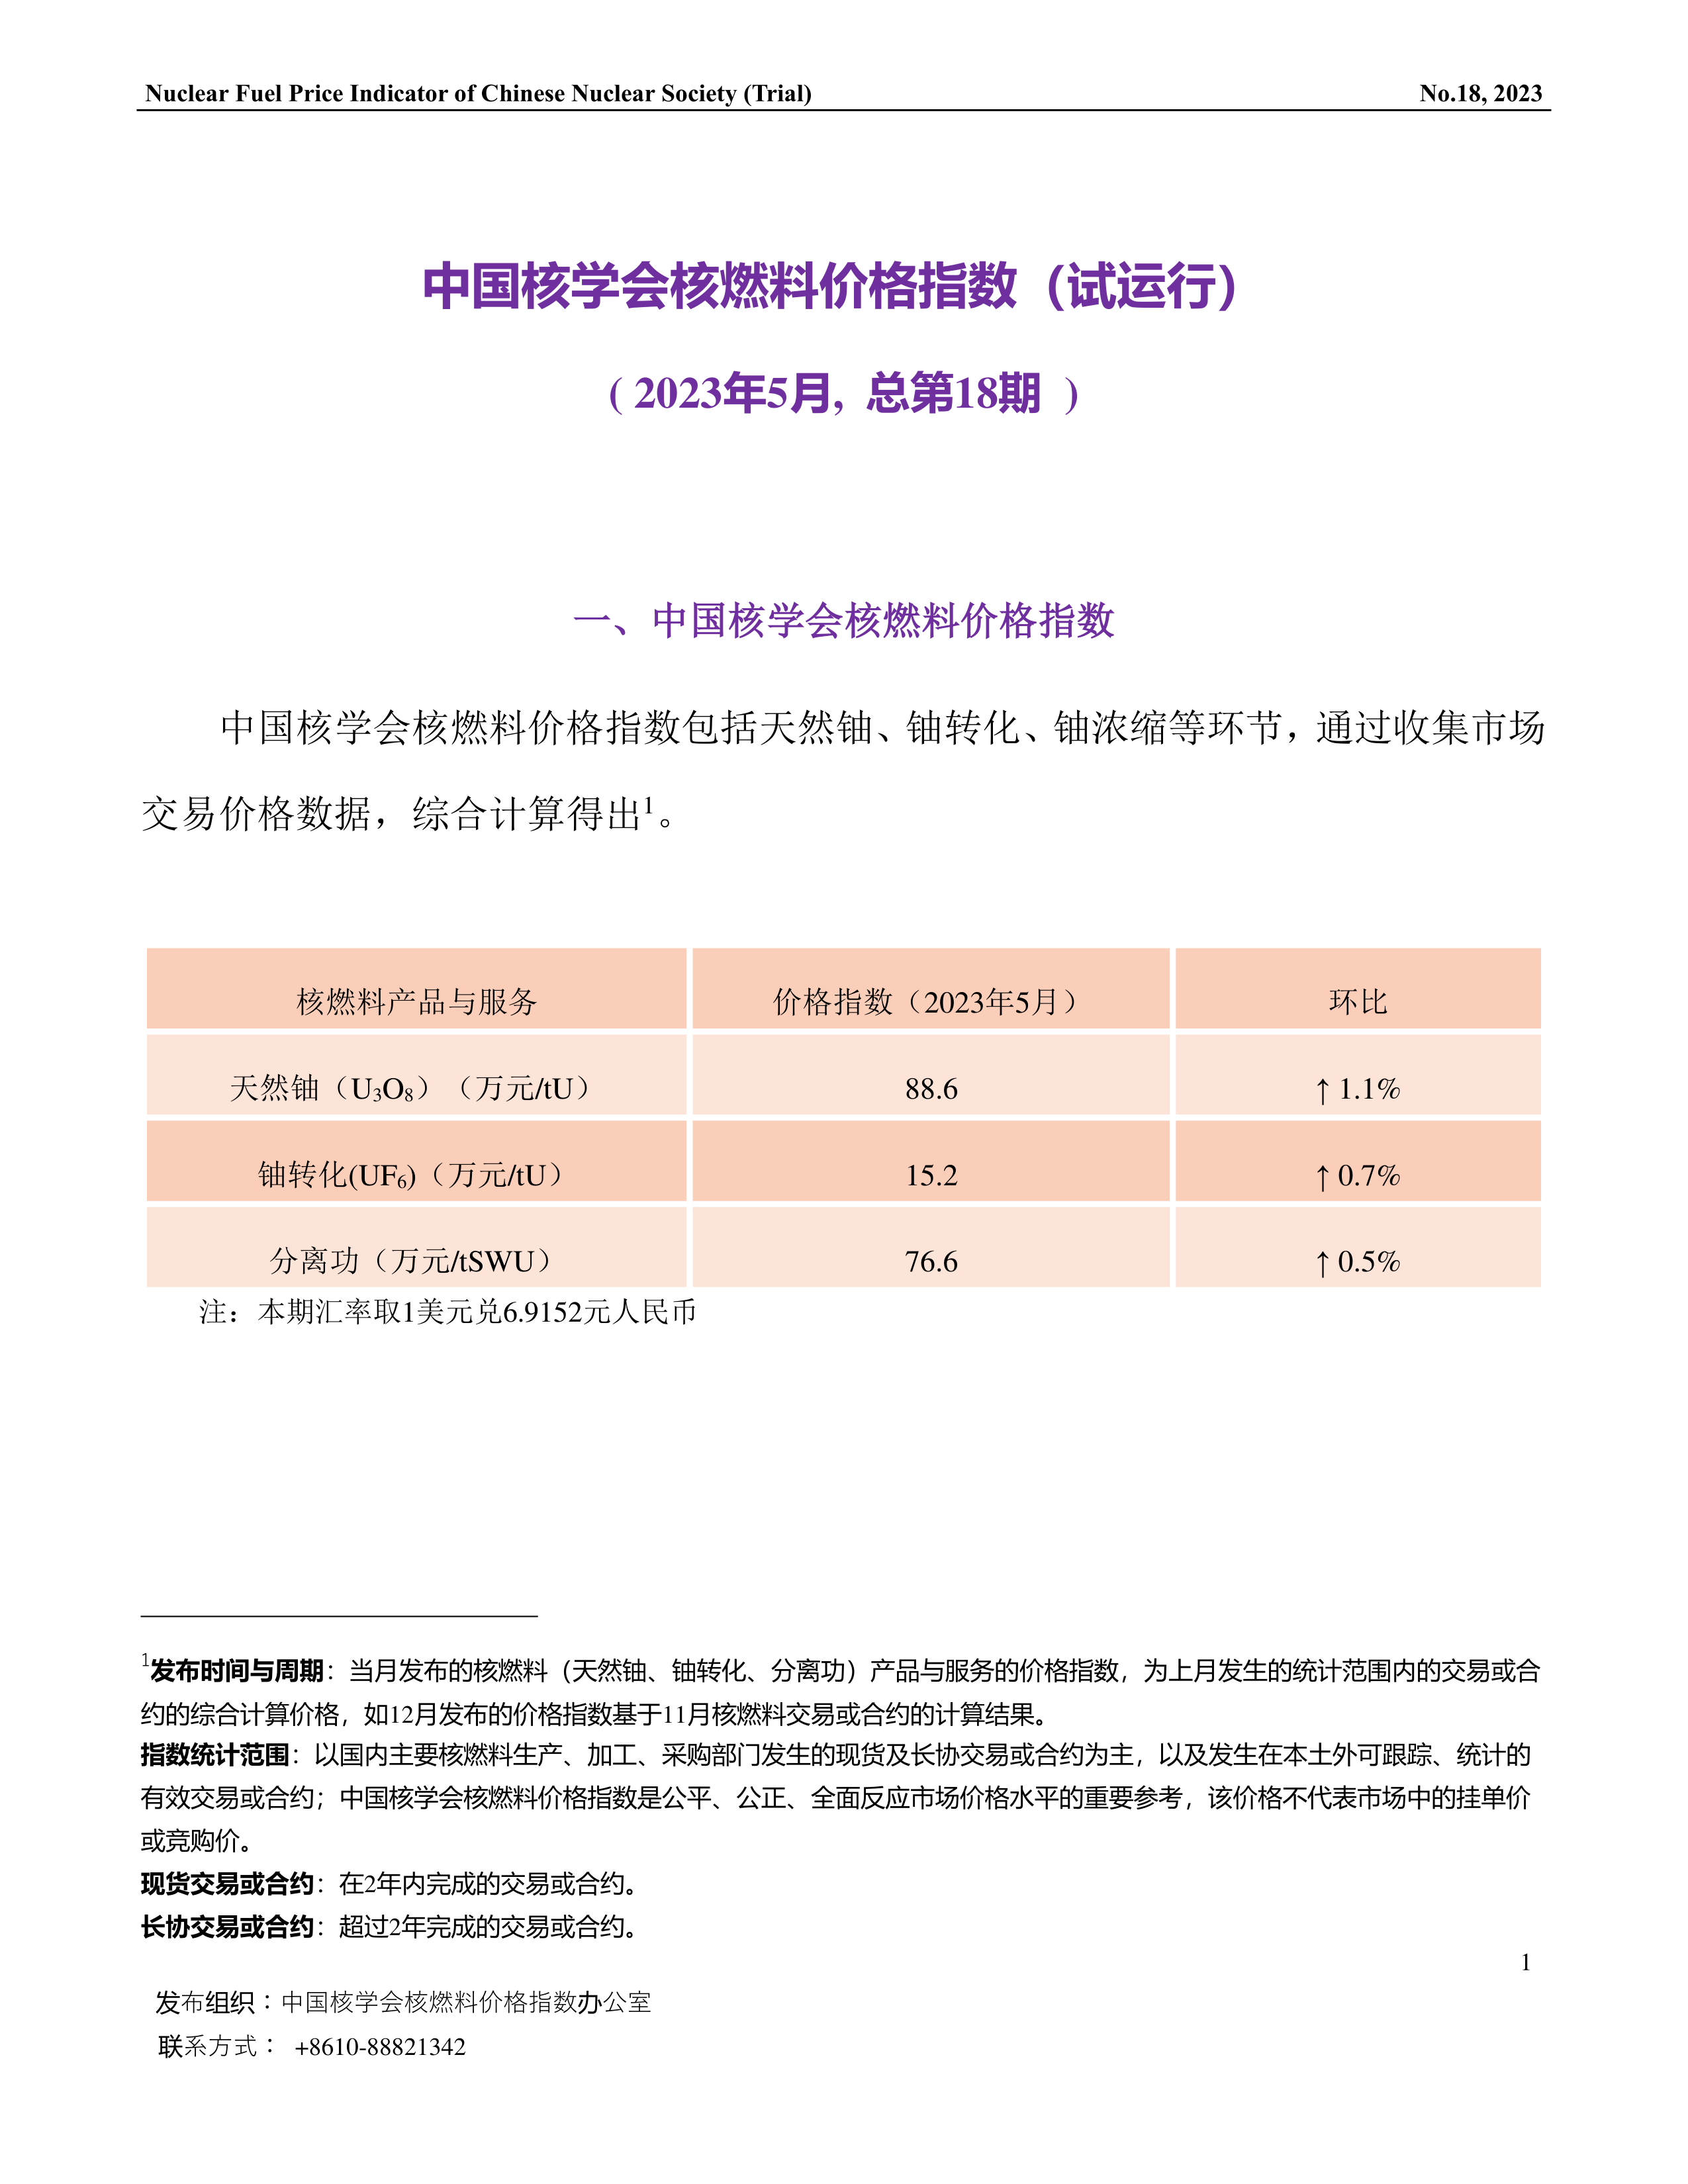 中国核学会核燃料价格指数(试运行)（2023年5月,总第18期）-终稿-1.png